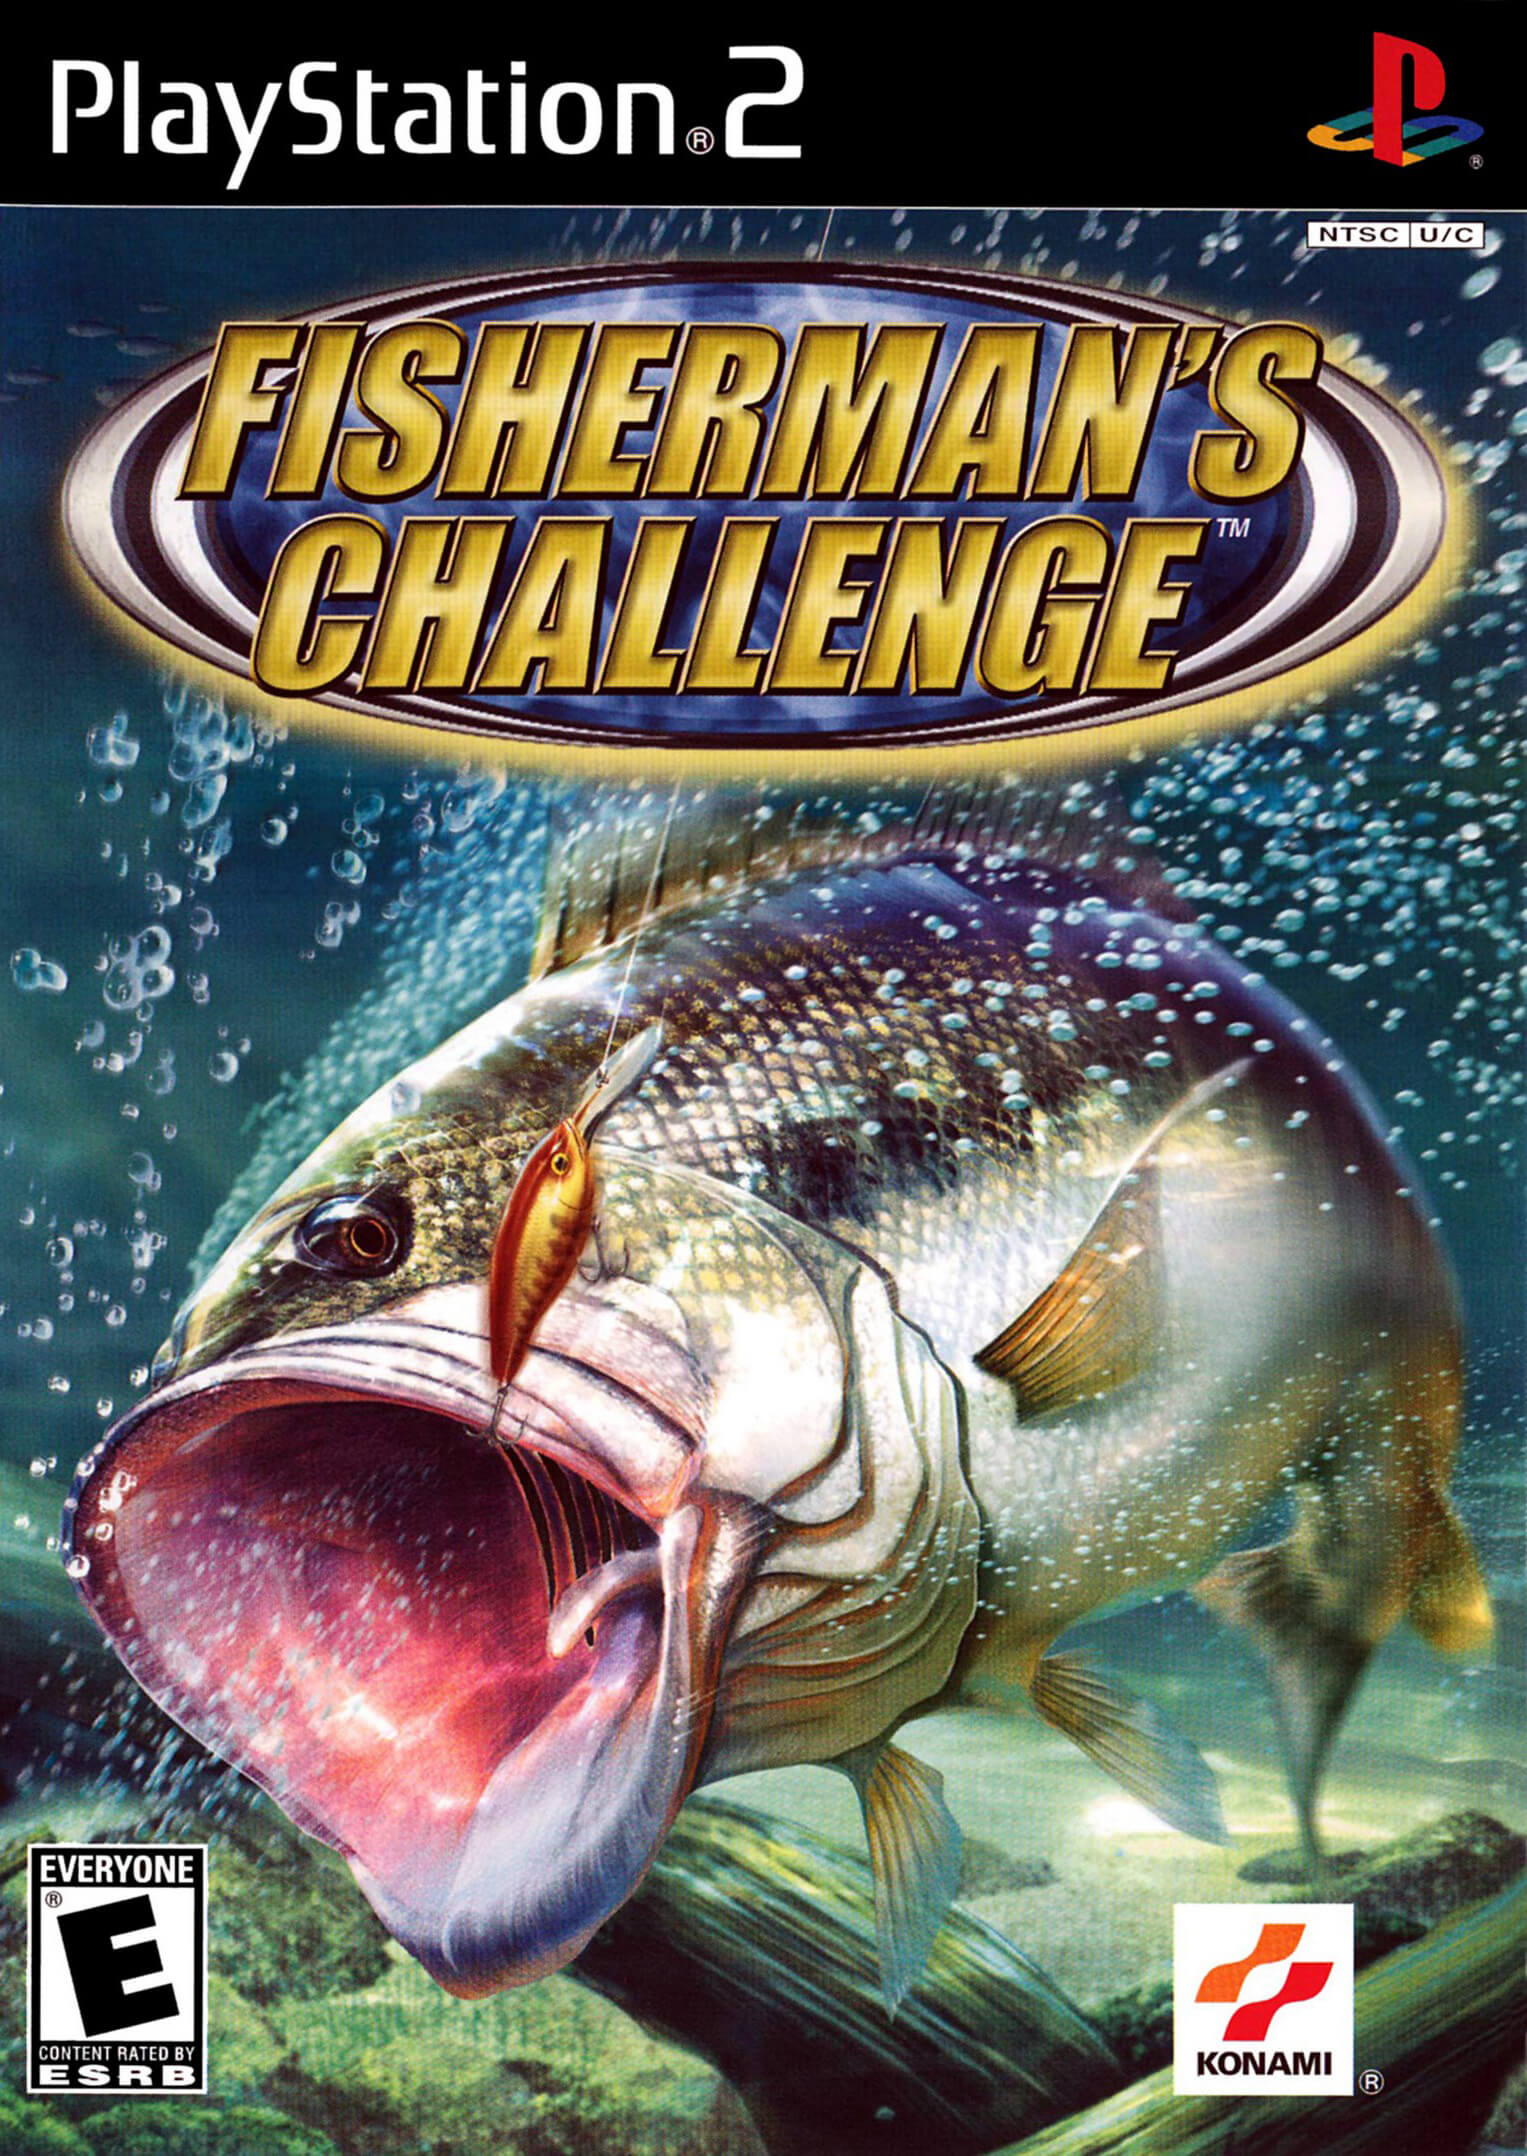 Fisherman’s Challenge